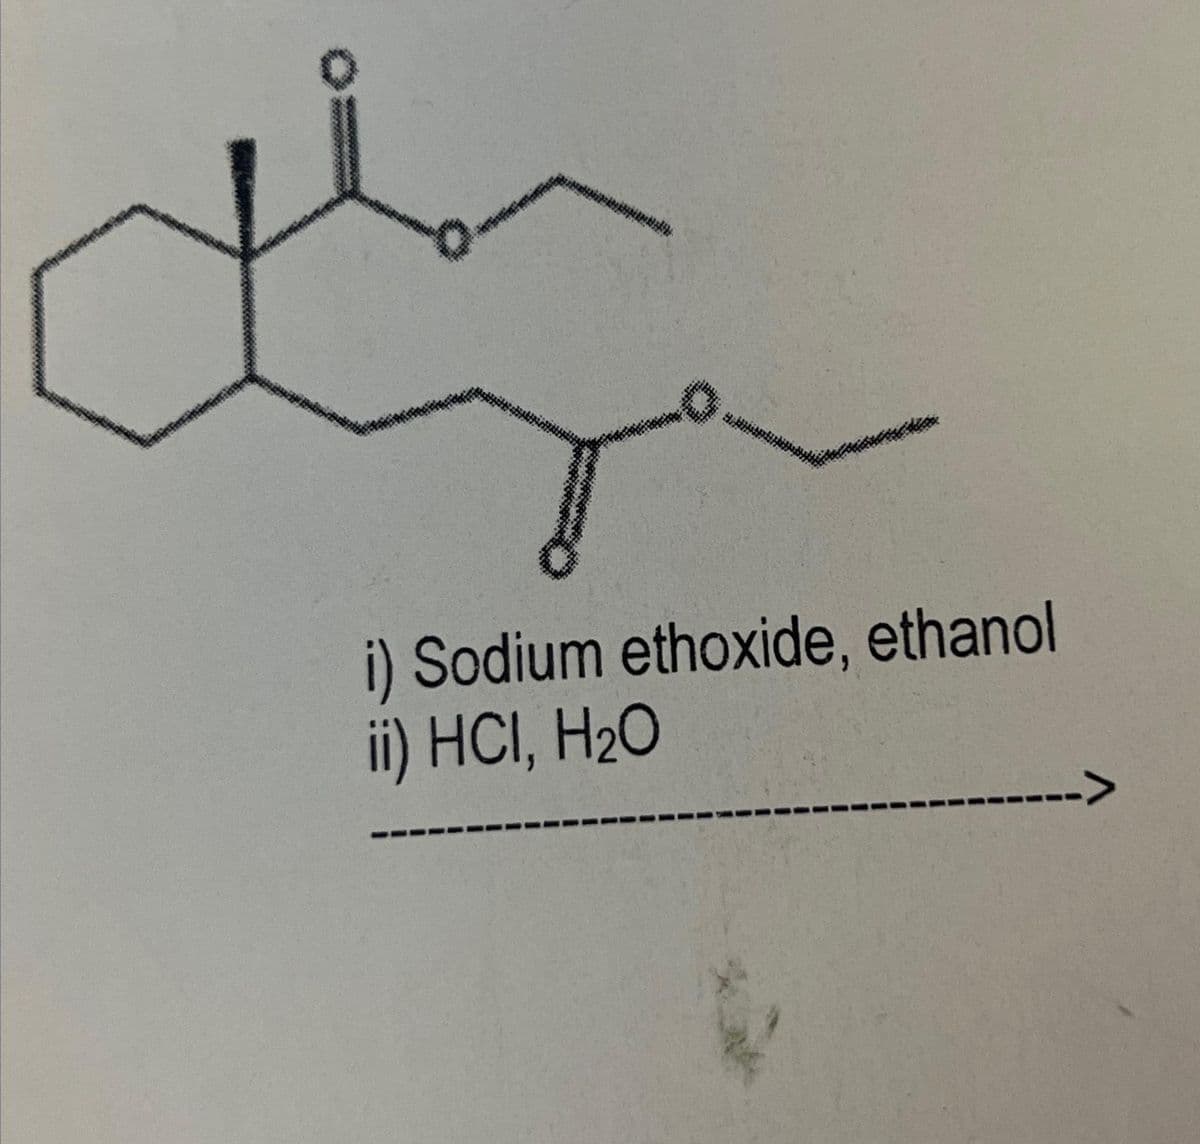 i) Sodium ethoxide, ethanol
ii) HCI, H₂O
->